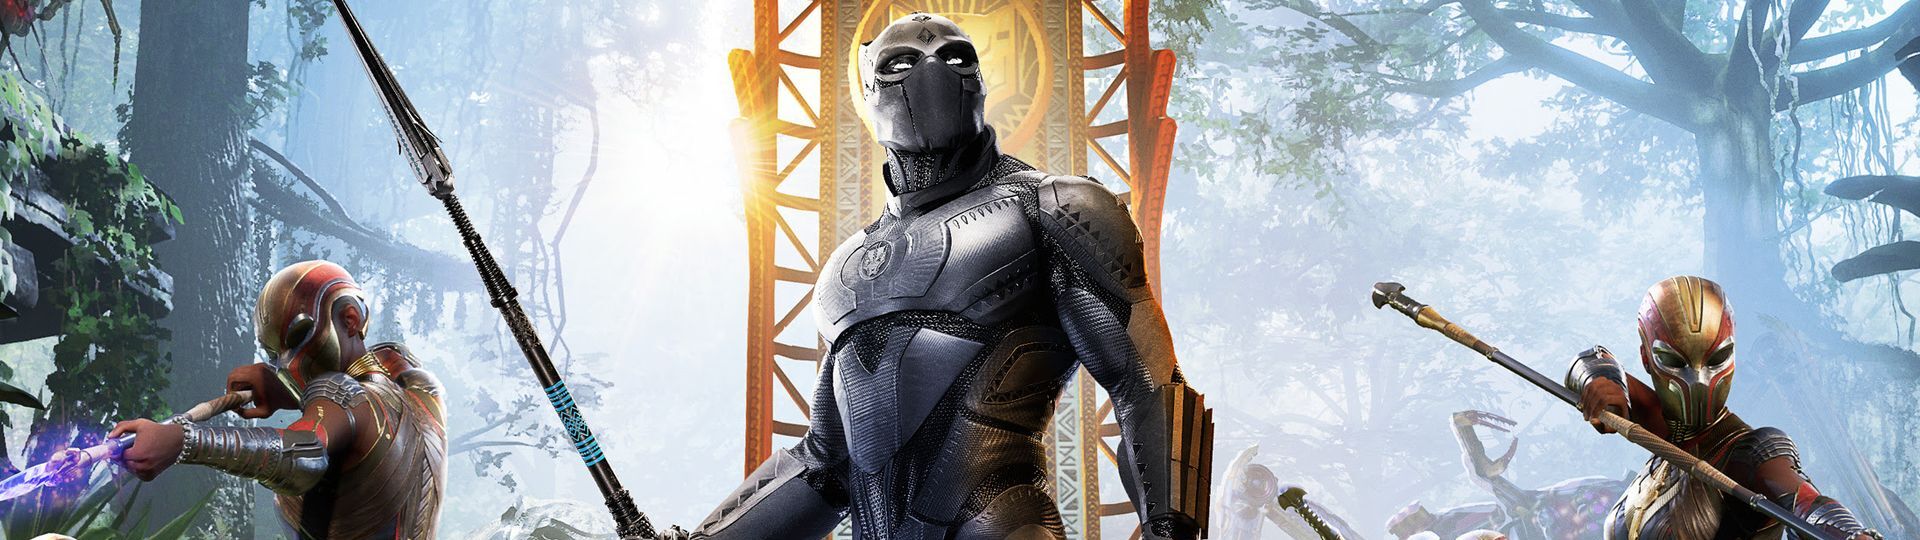 Black Panther dorazil do herních Avengers | Videa